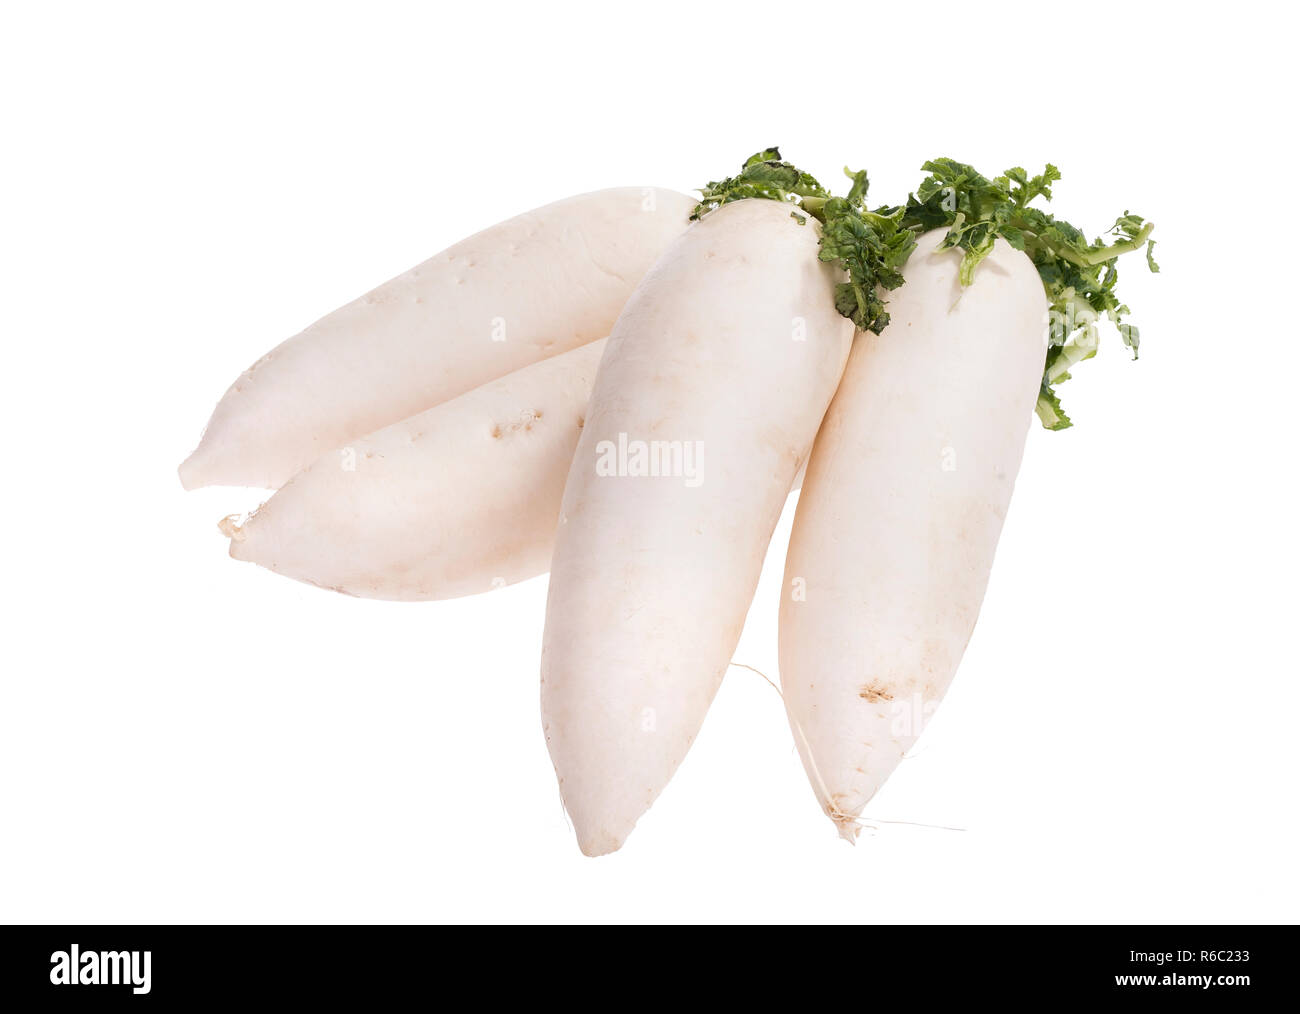 Daikon ravanelli isolati su sfondo bianco Foto Stock